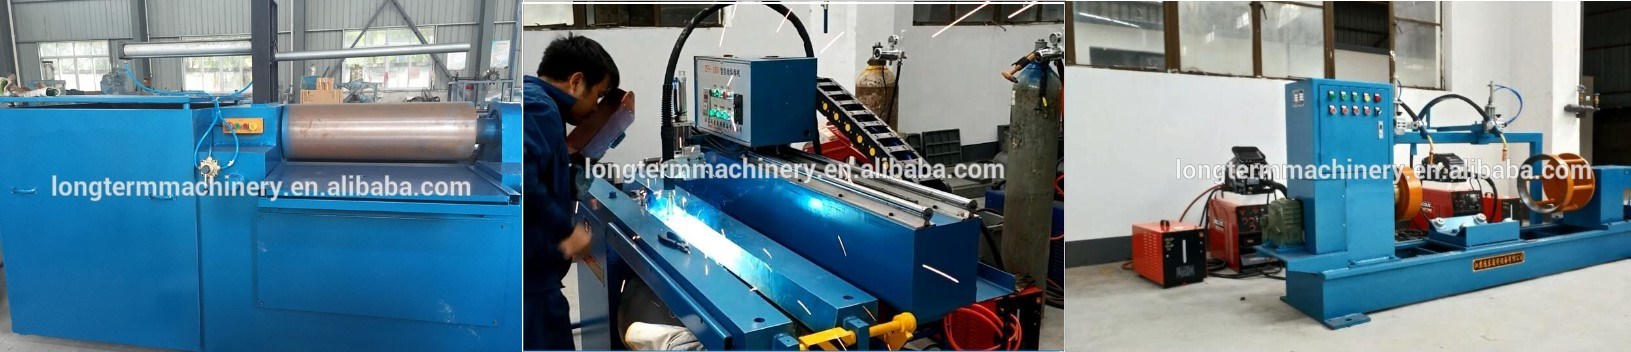 Auto Linear Cylinder Seam Welding Machine